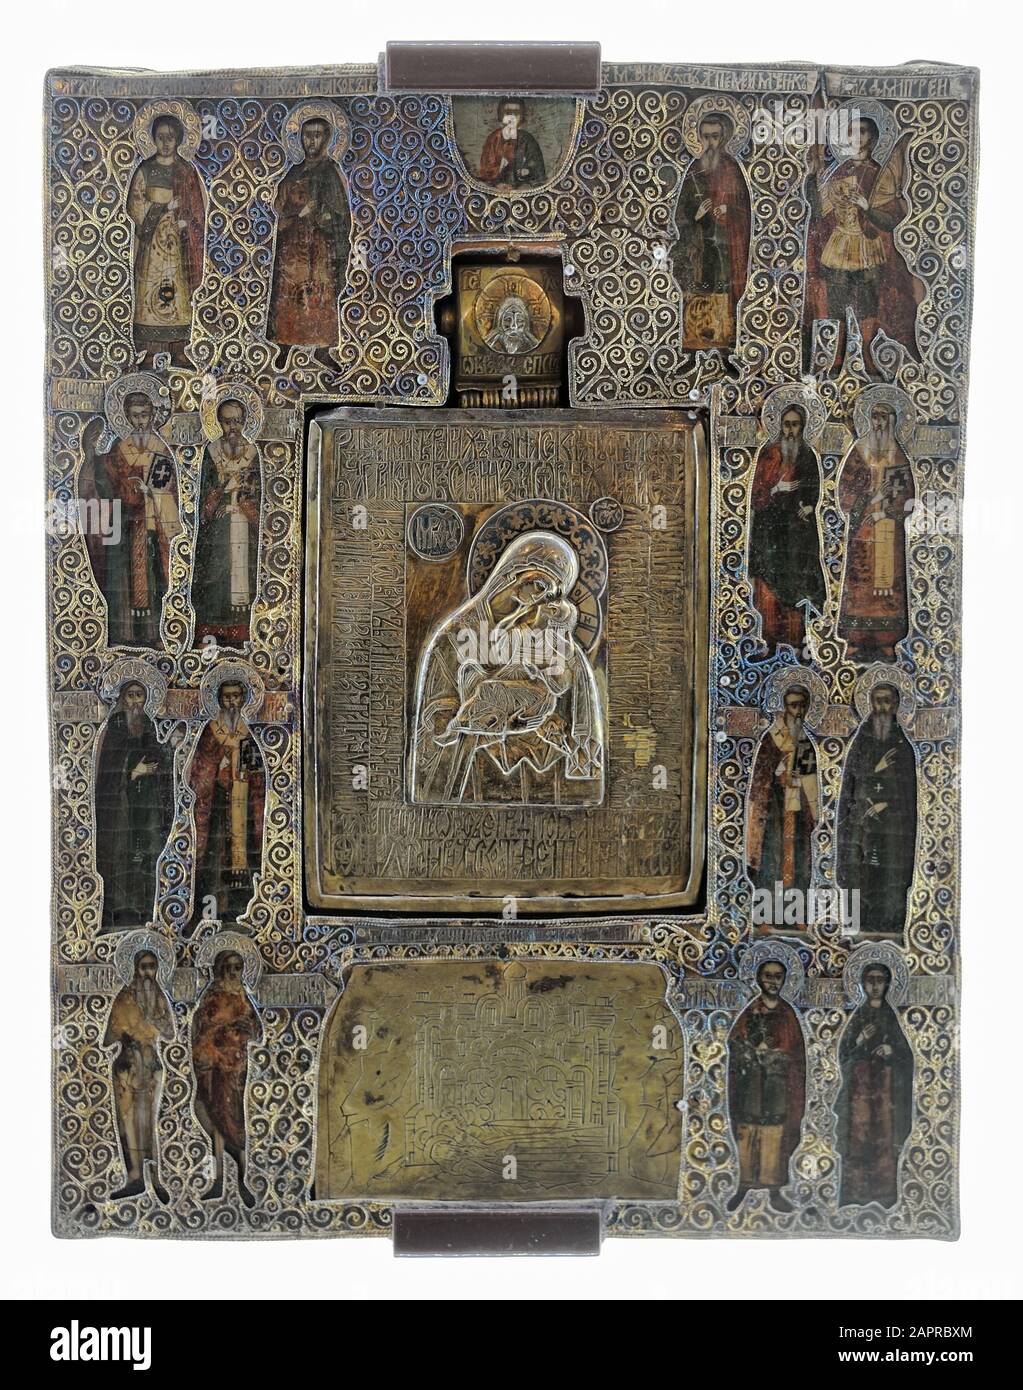 La Vierge de l'Yakhroma avec l'icône de saints sélectionnés au Trésor d'or du monastère de Saint-Euthimius à Souzdal. Banque D'Images